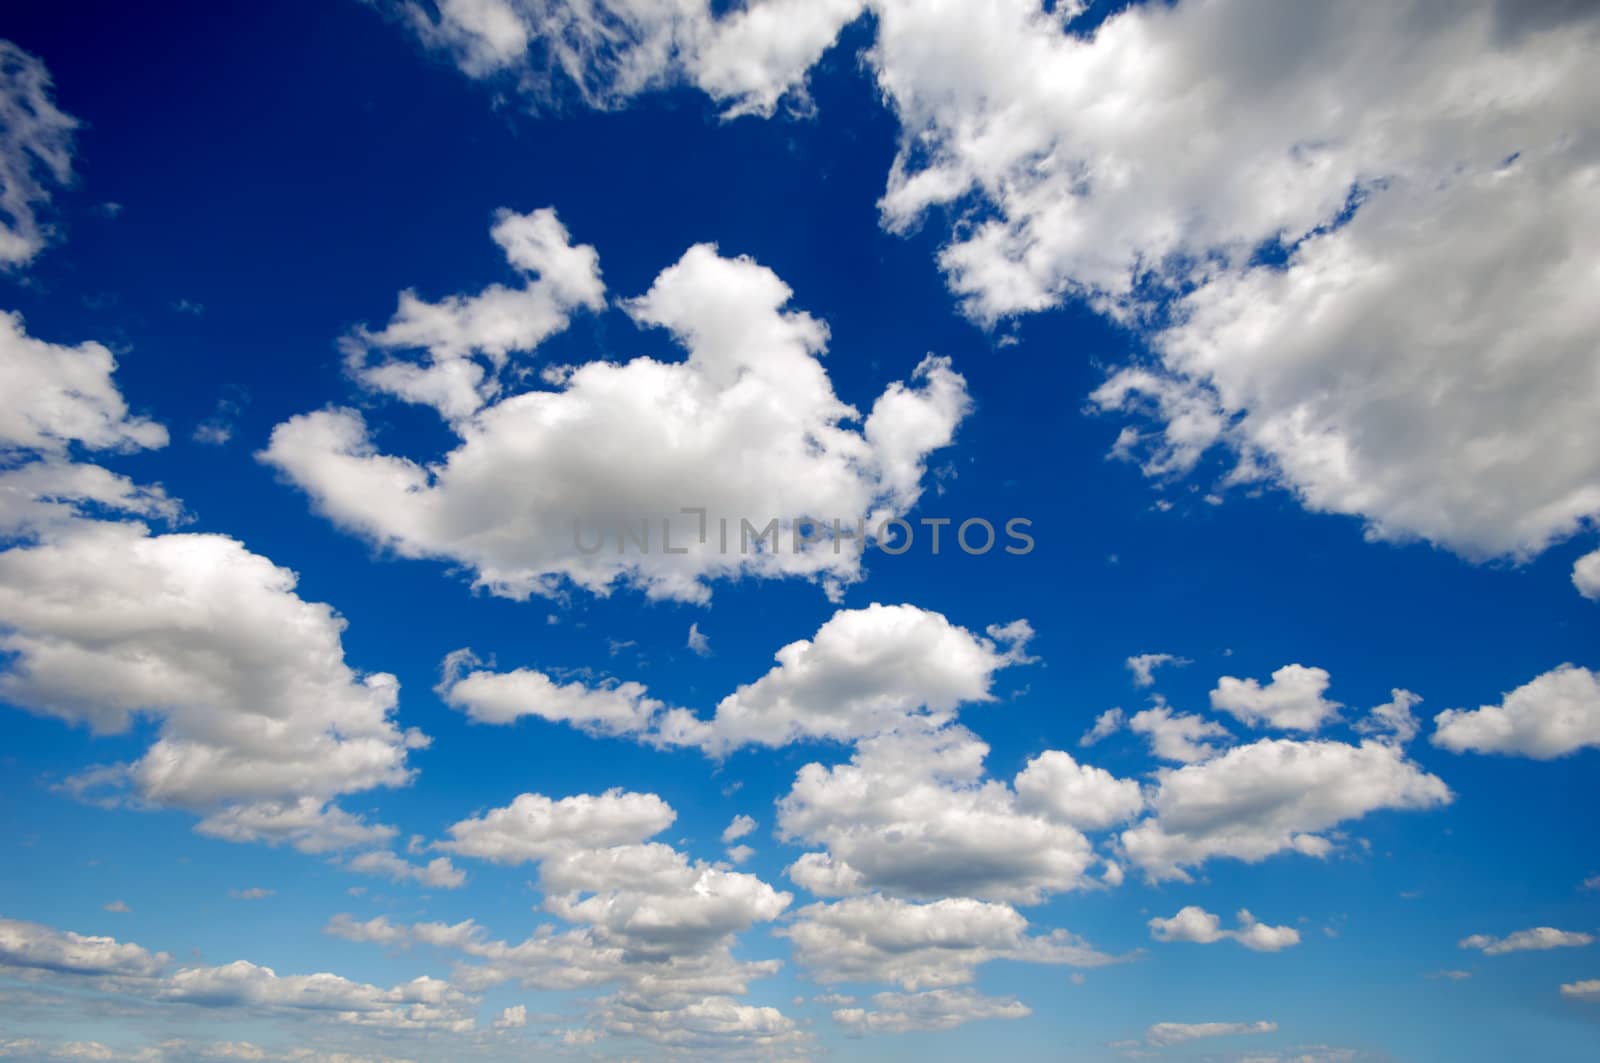 Cumulus clouds by cfoto